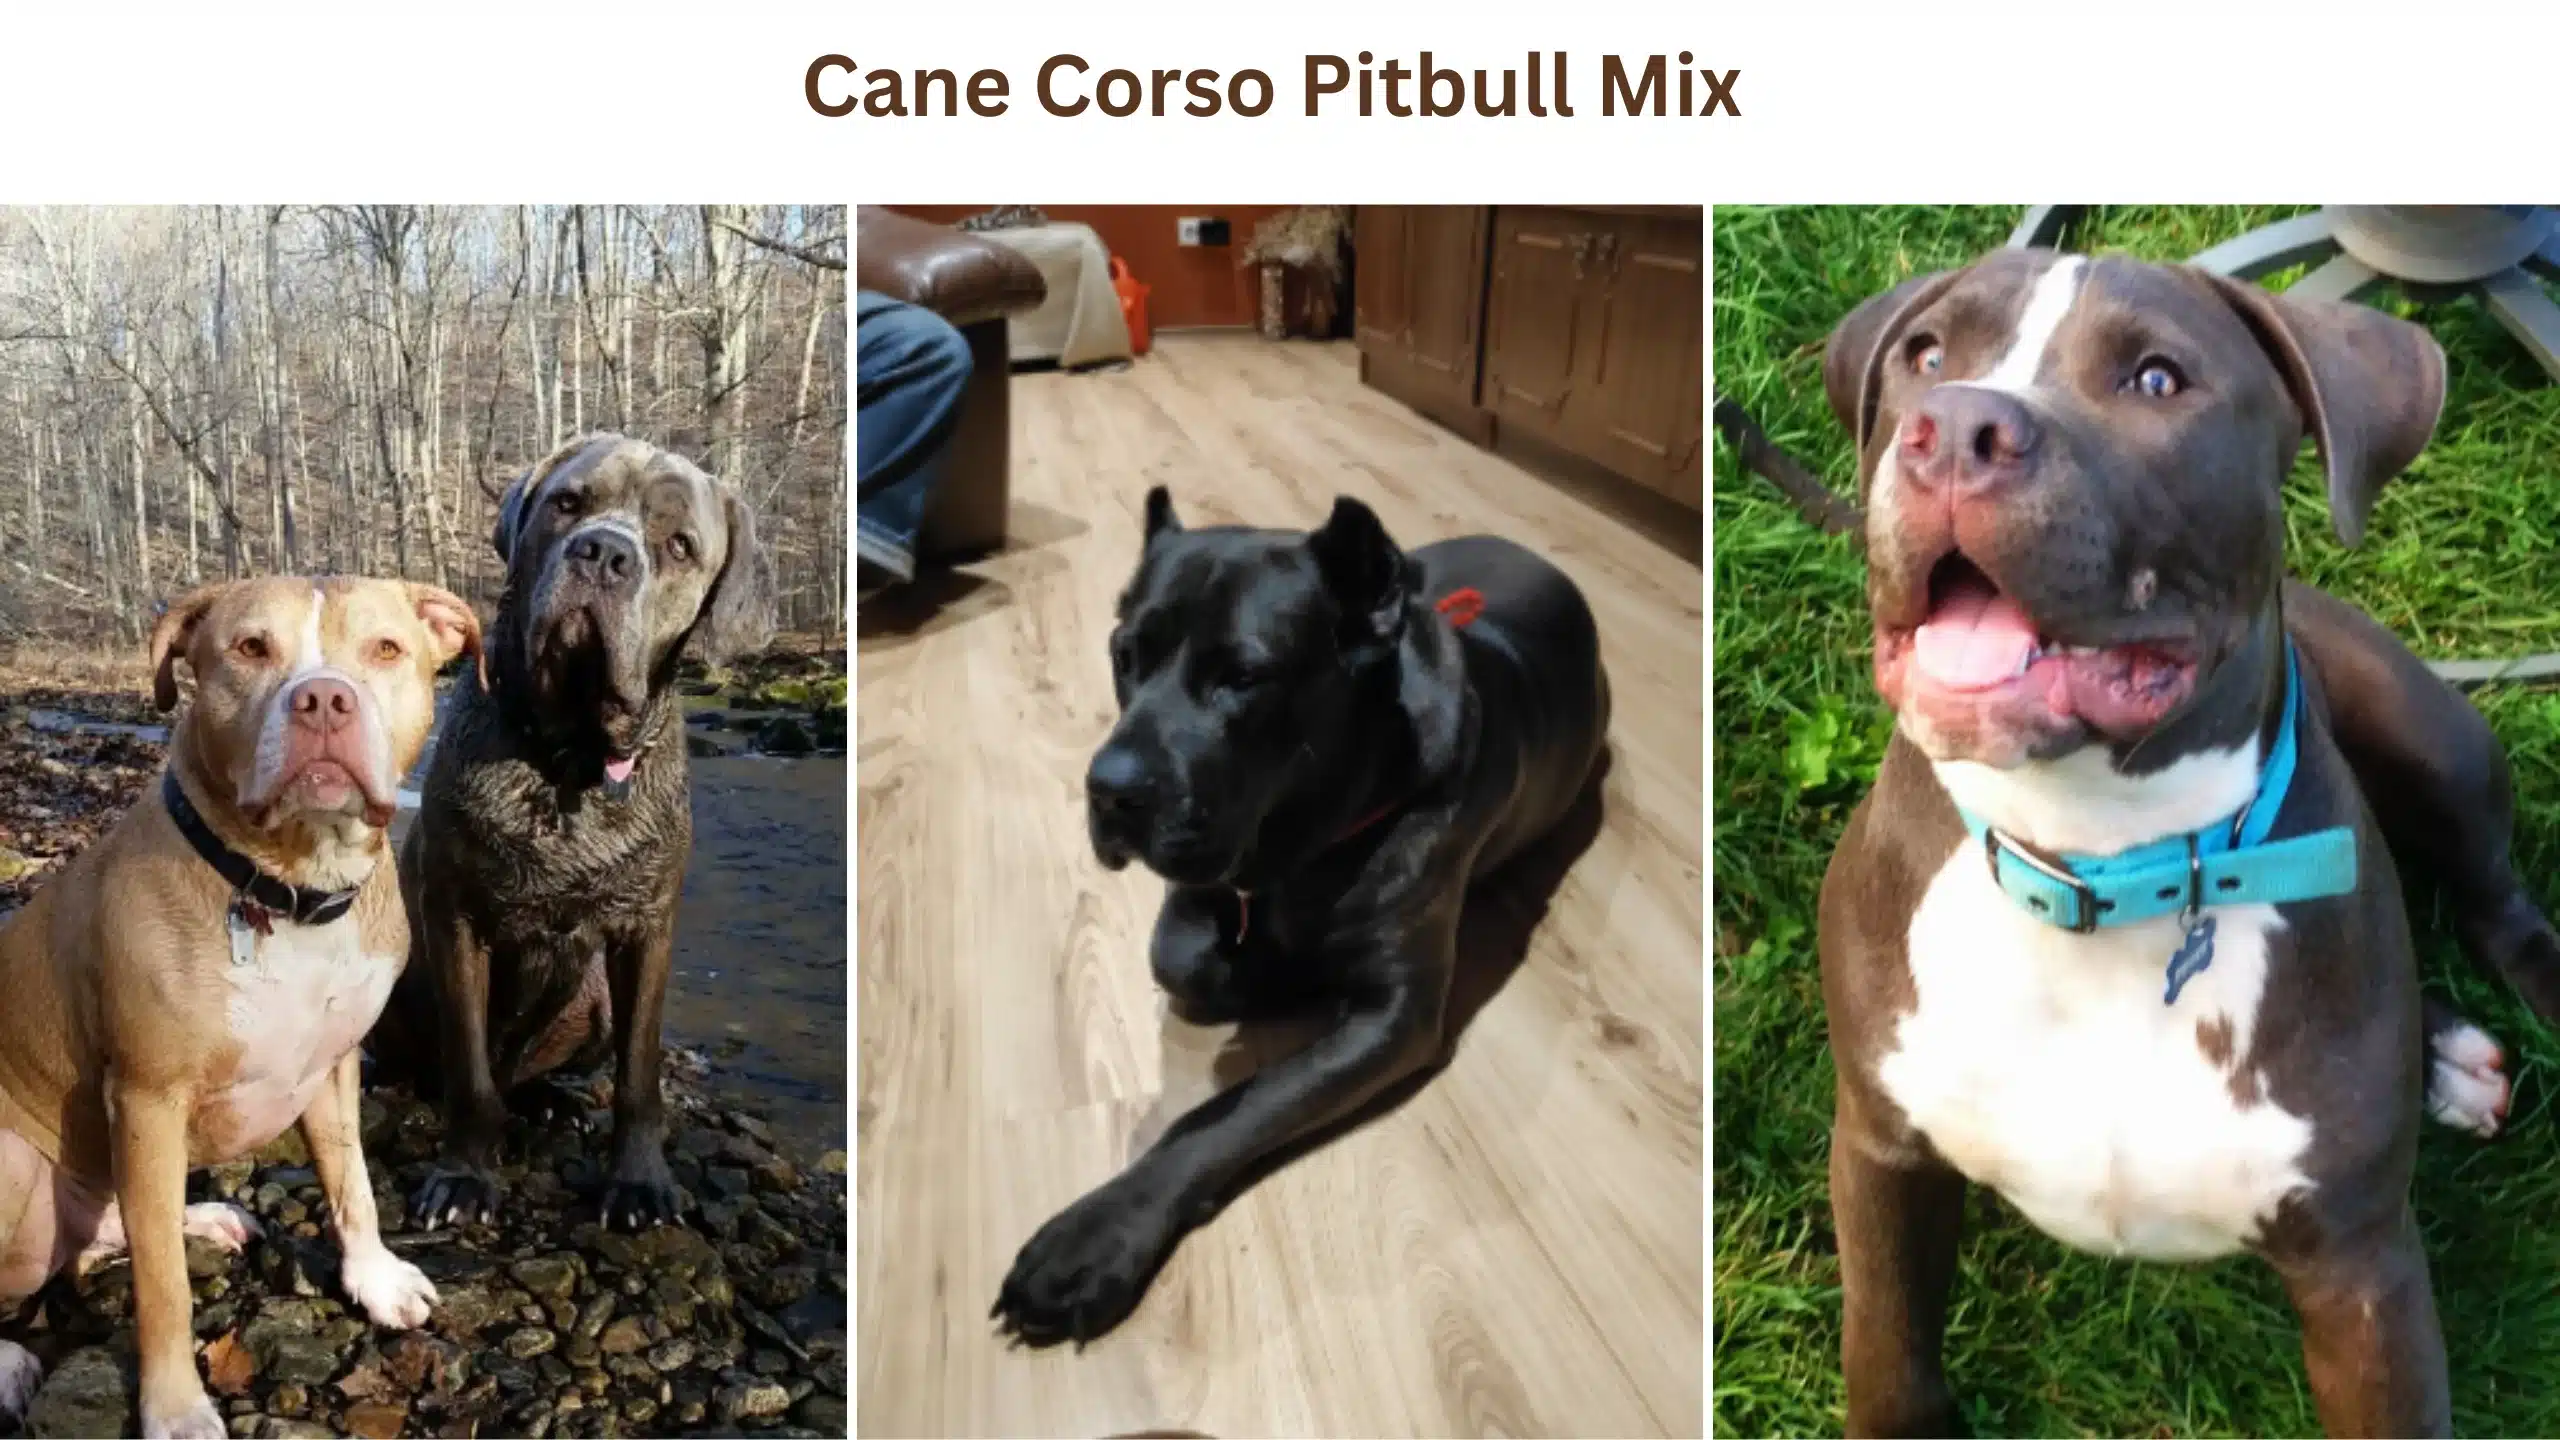 Cane Corso pitbull mix